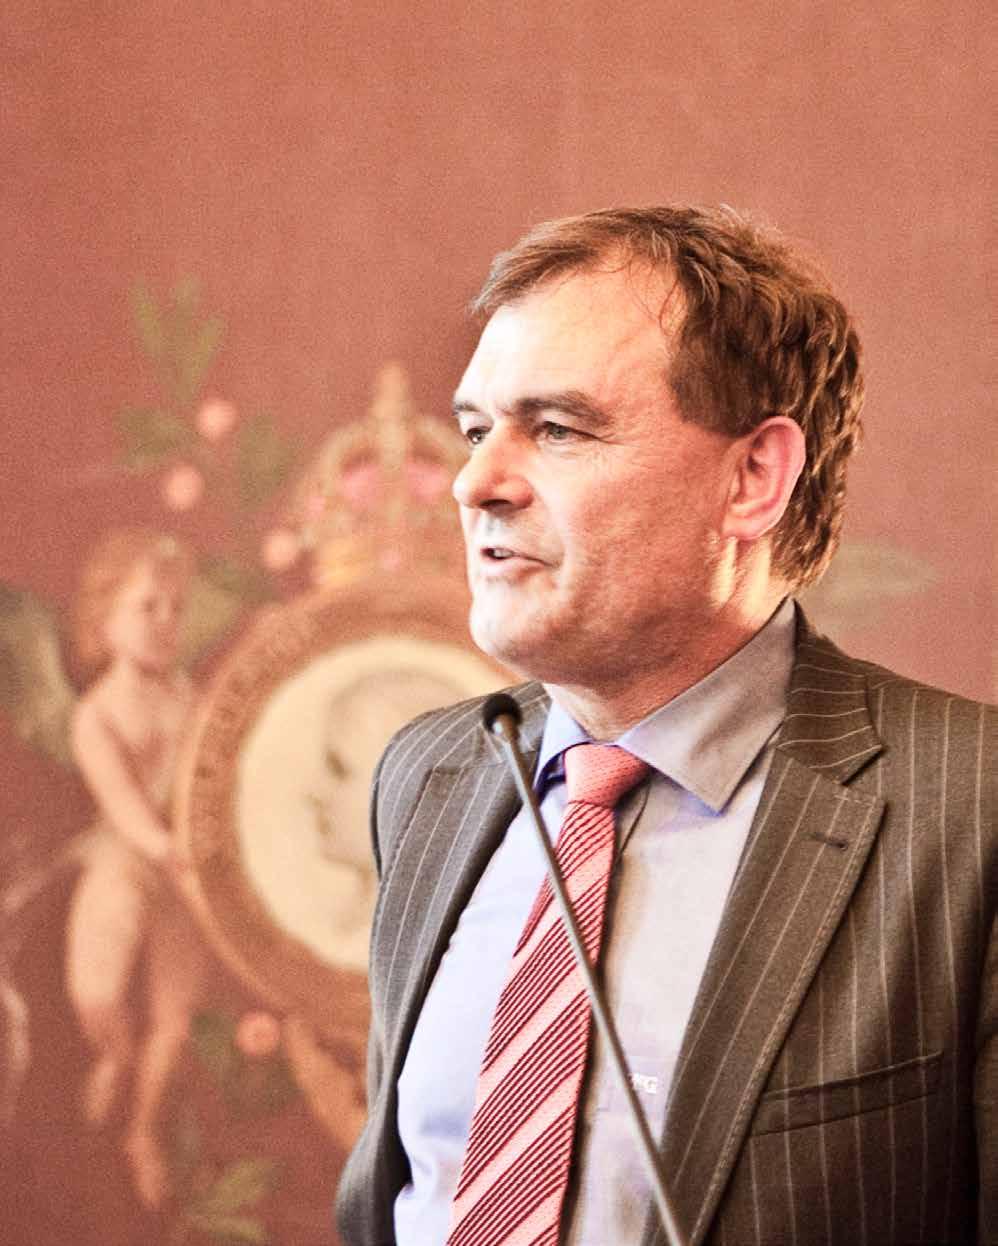 Toespraak procureur-generaal, Marc van Nimwegen Procureur-generaal Marc van Nimwegen heeft zich binnen het OM ruim 10 jaar bezig gehouden met Veiligheidshuizen.